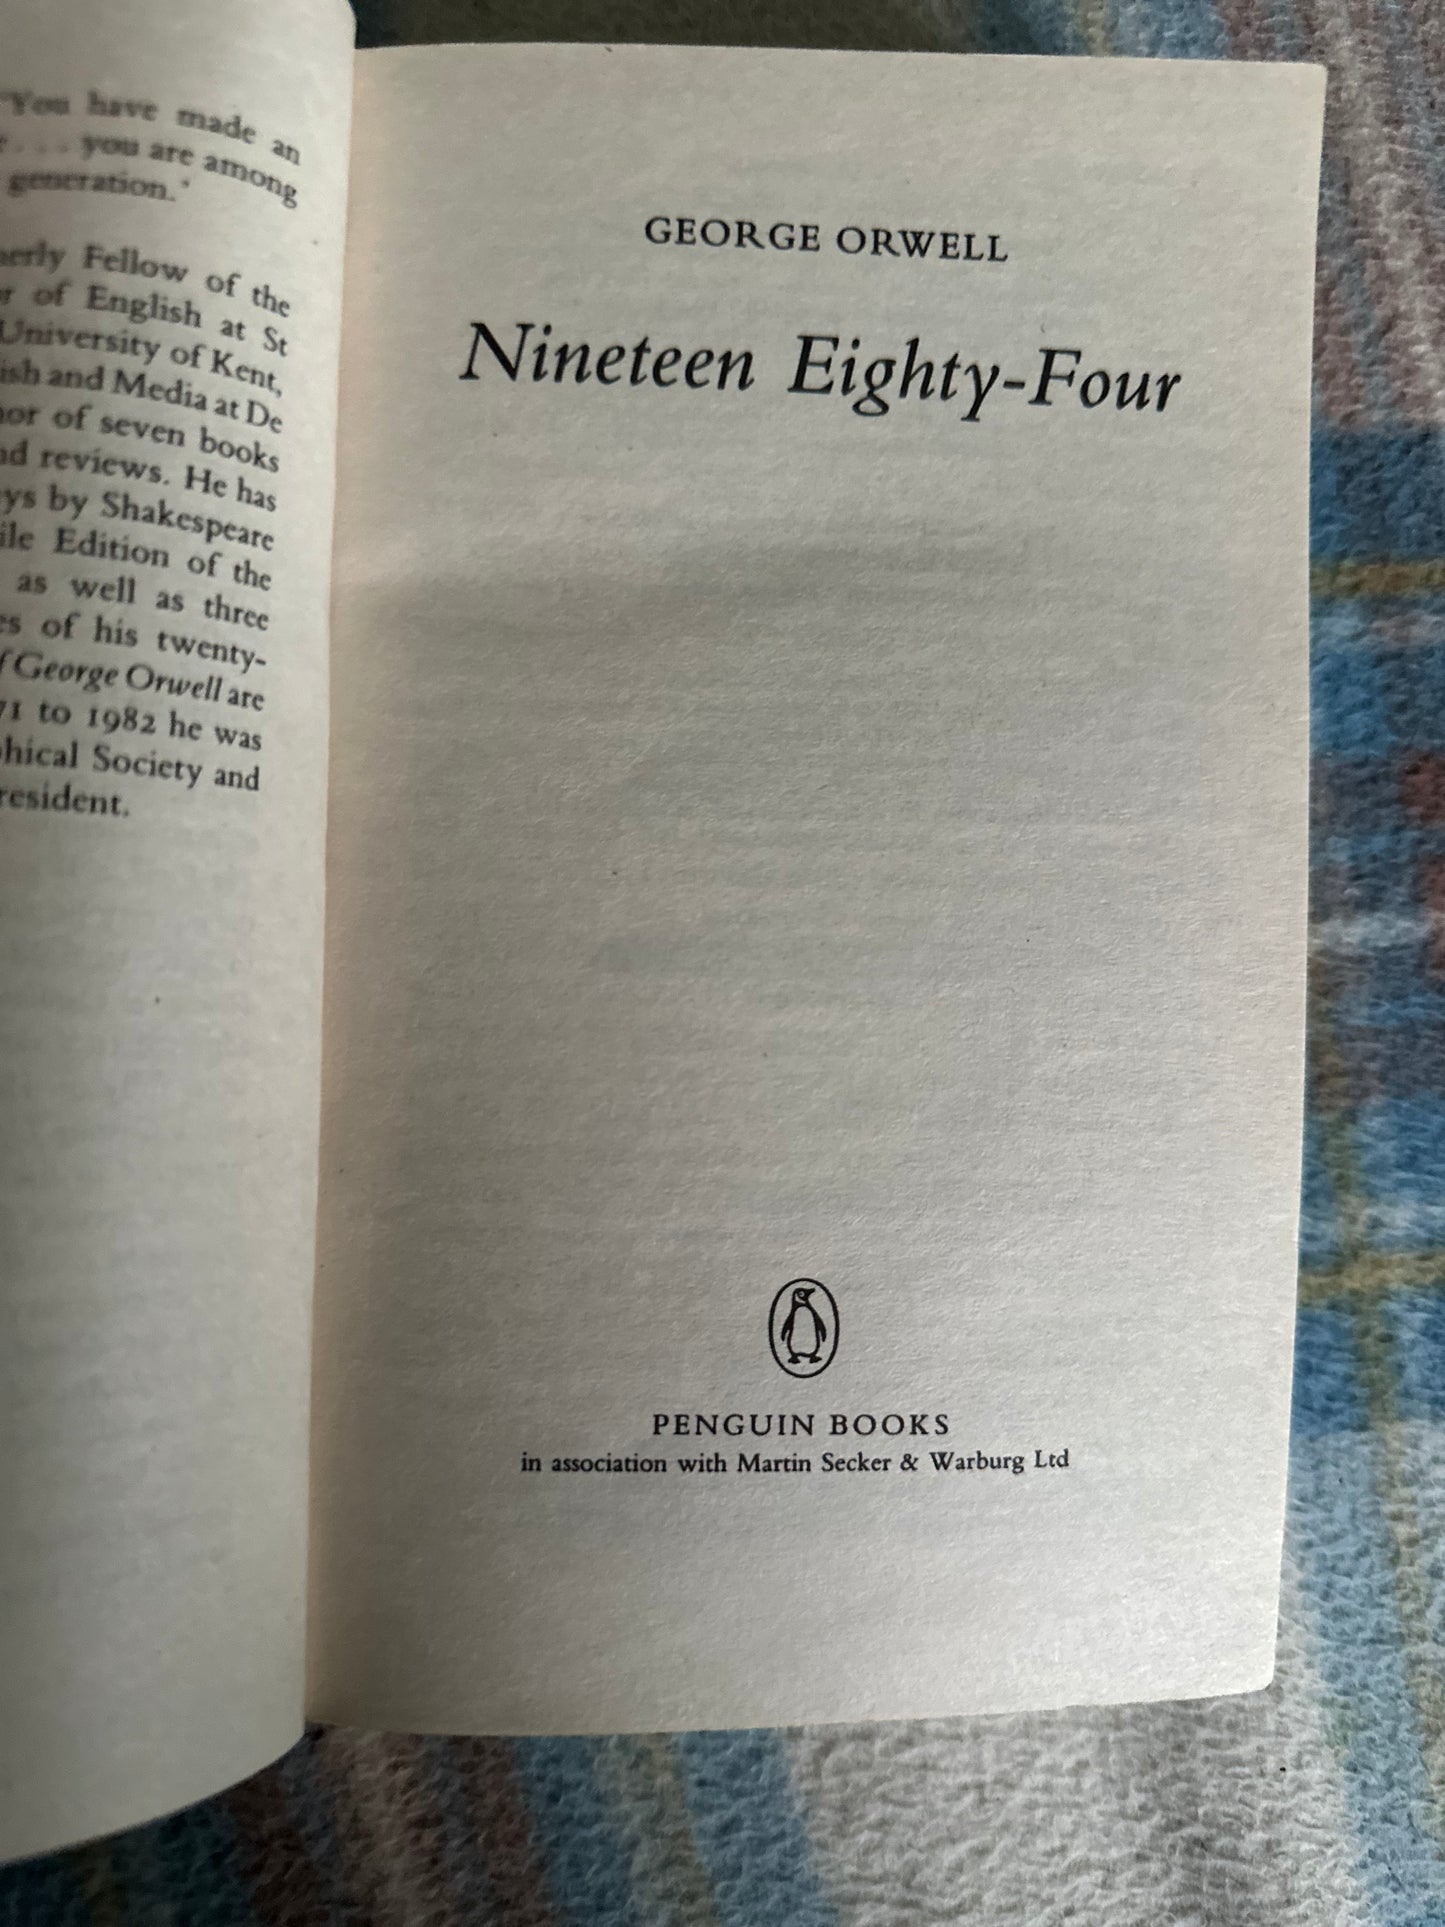 2008 1984 George Orwell(Penguin Books)